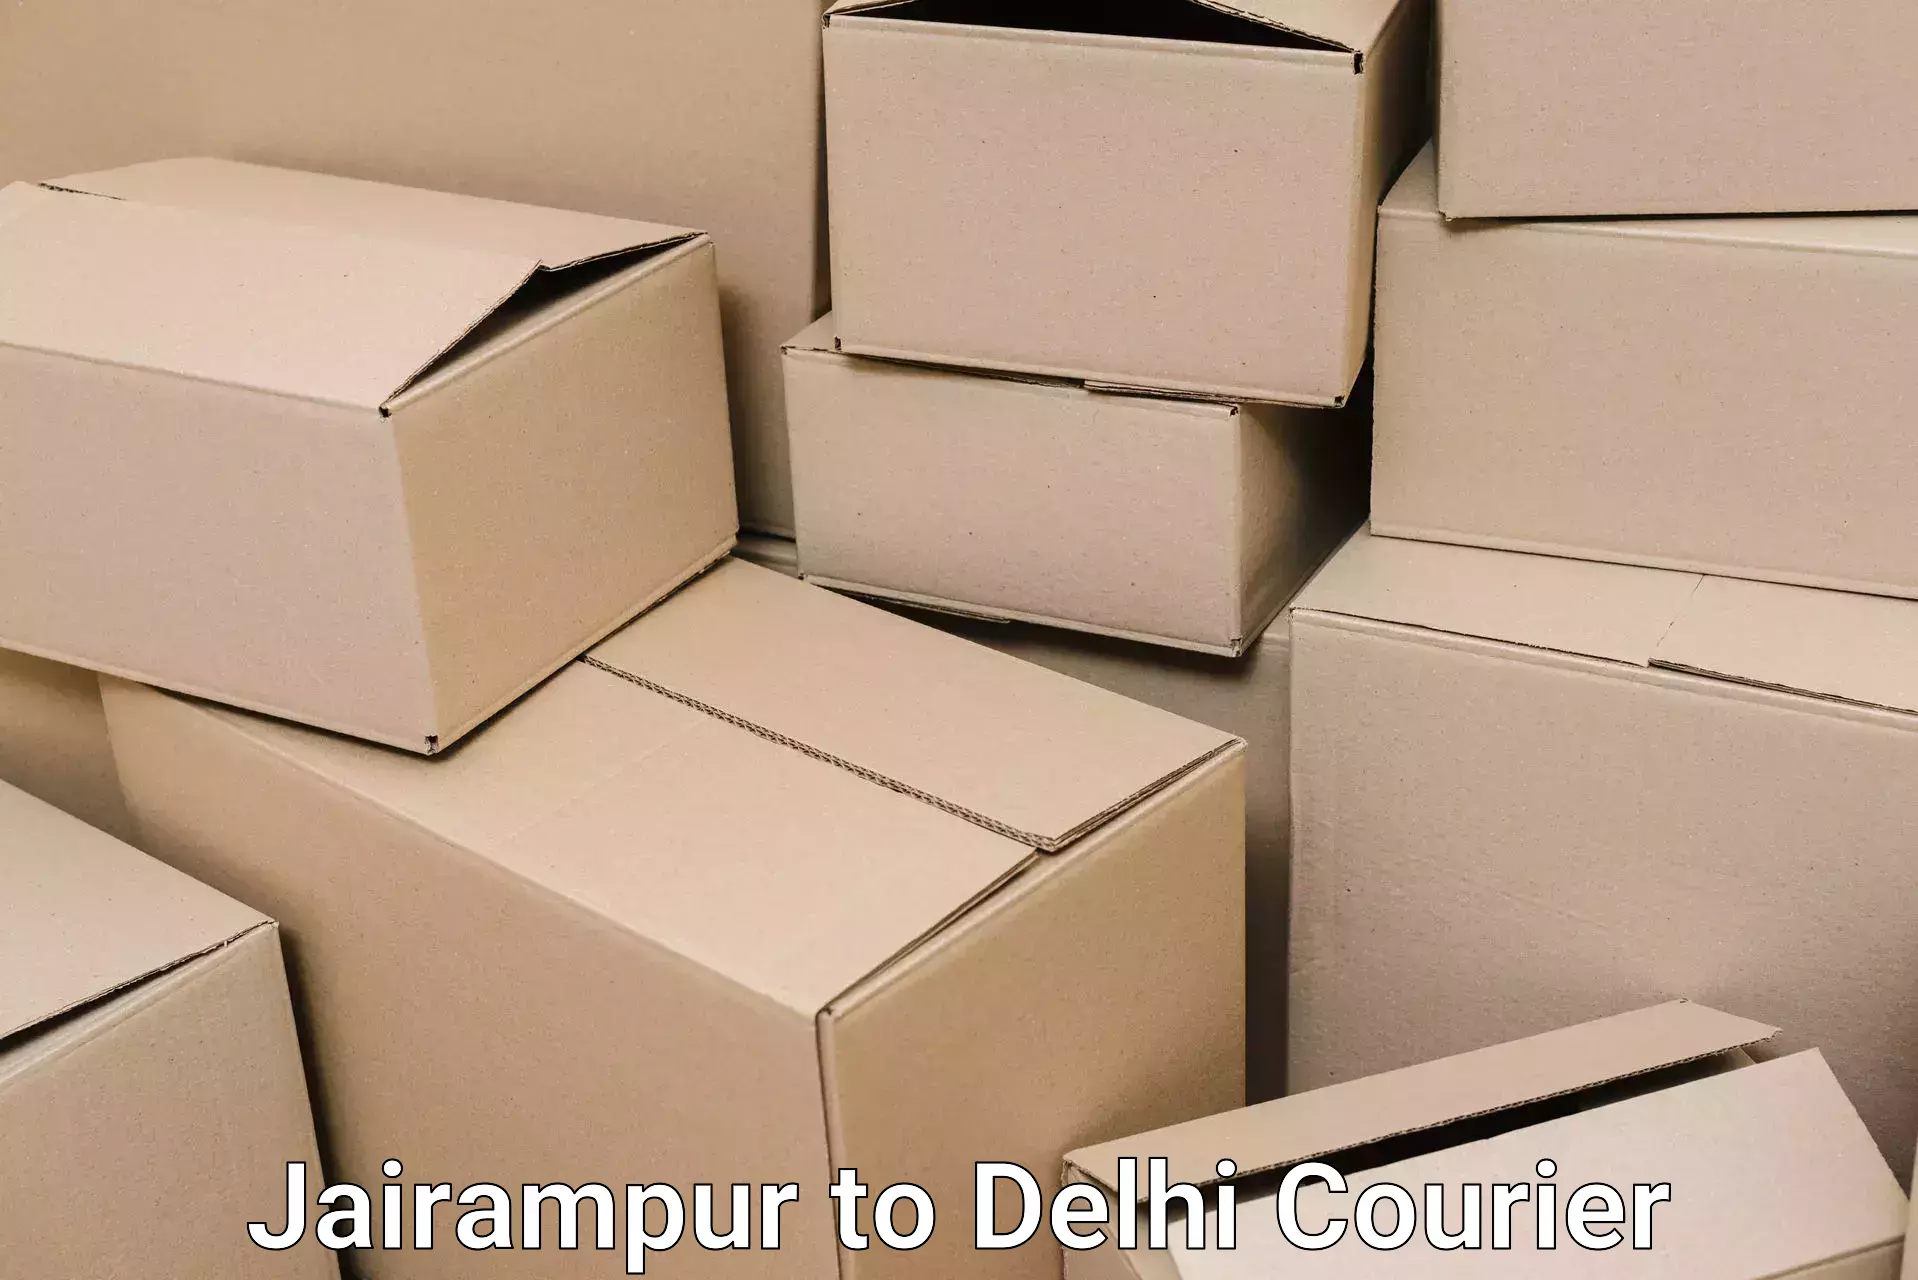 Household moving experts Jairampur to Jawaharlal Nehru University New Delhi